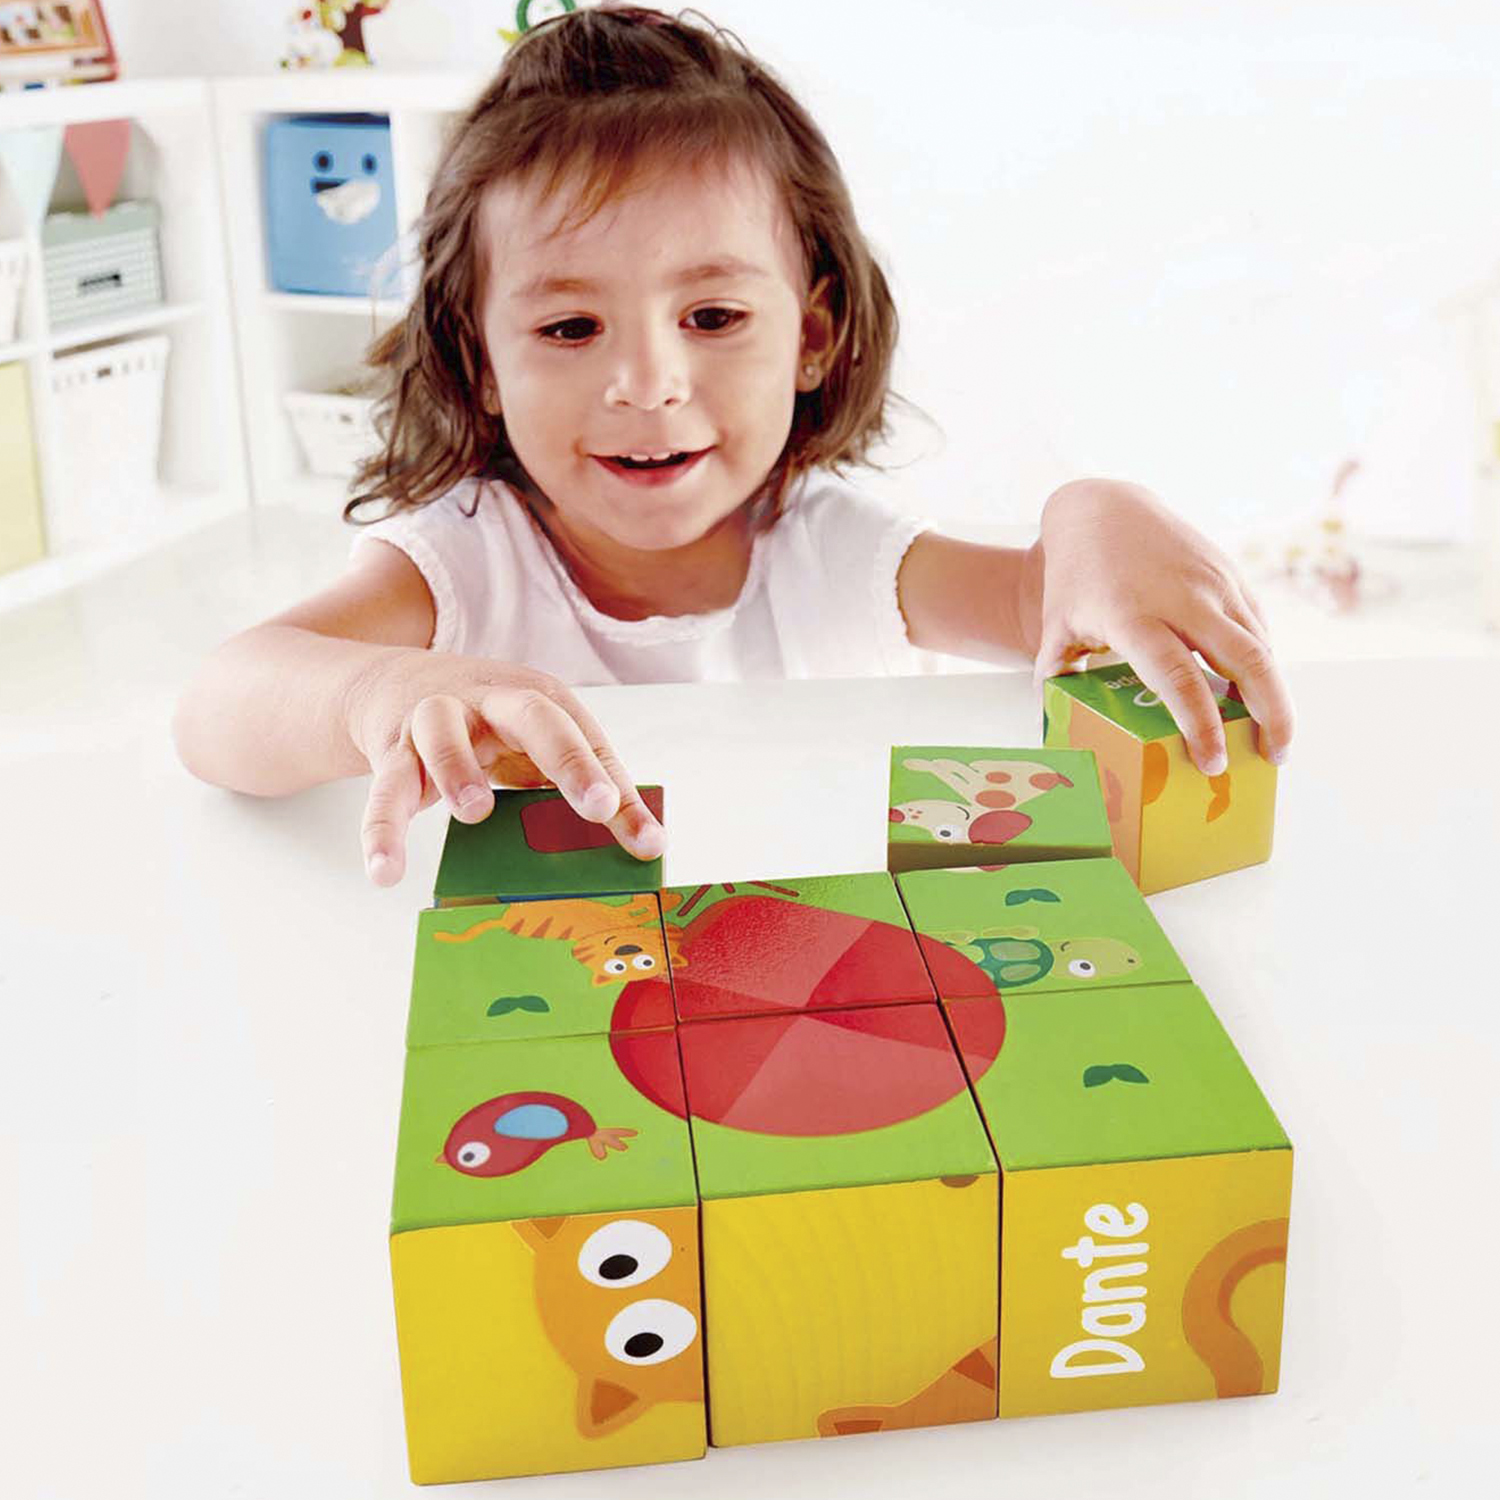 Развивающая игрушка Hape Кубики-пазлы Лили 9 элементов, 6 вариантов картинок, деревянные деревянные кубики со слогами читаю легко умница как научить ребенка быстро читать